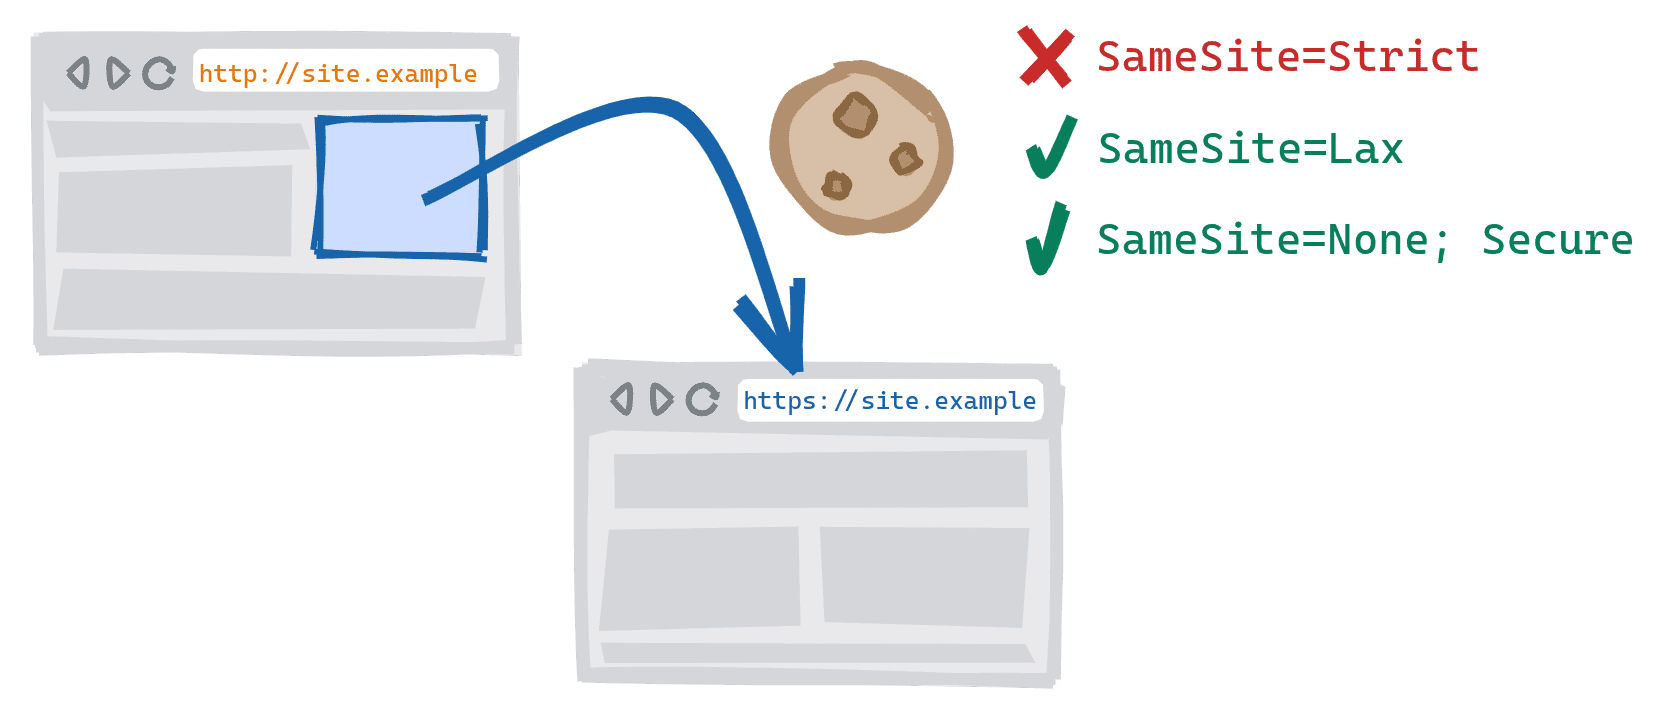 Navegação de esquema cruzado acionada ao seguir um link na versão HTTP não segura de um site para a versão HTTPS segura. SameSite=Cookies estritos bloqueados, SameSite=Lax e SameSite=None; Cookies seguros são permitidos.